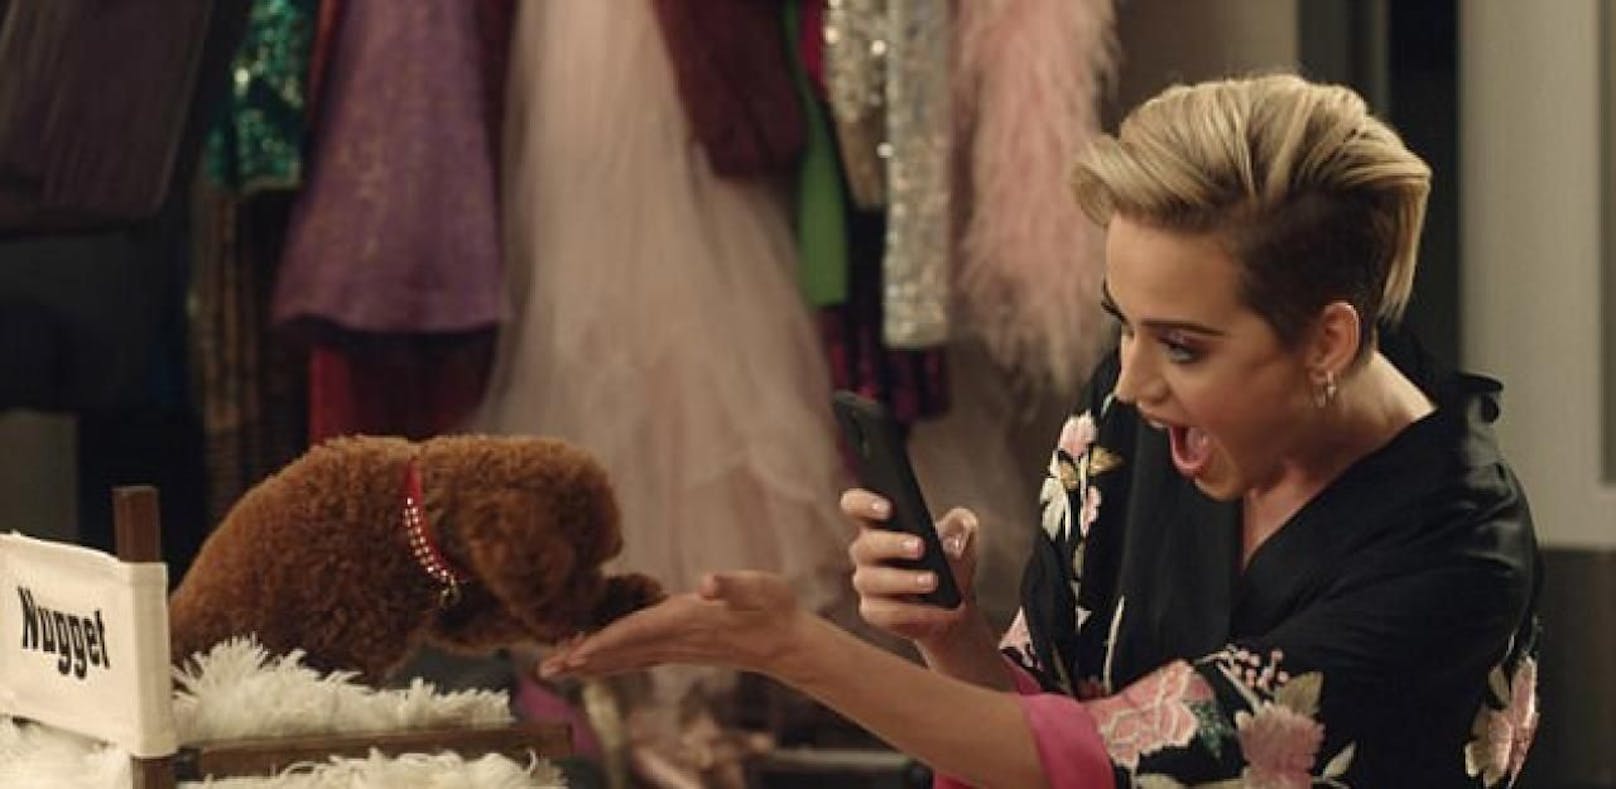 Katy Perrys Hund wird zum Werbestar